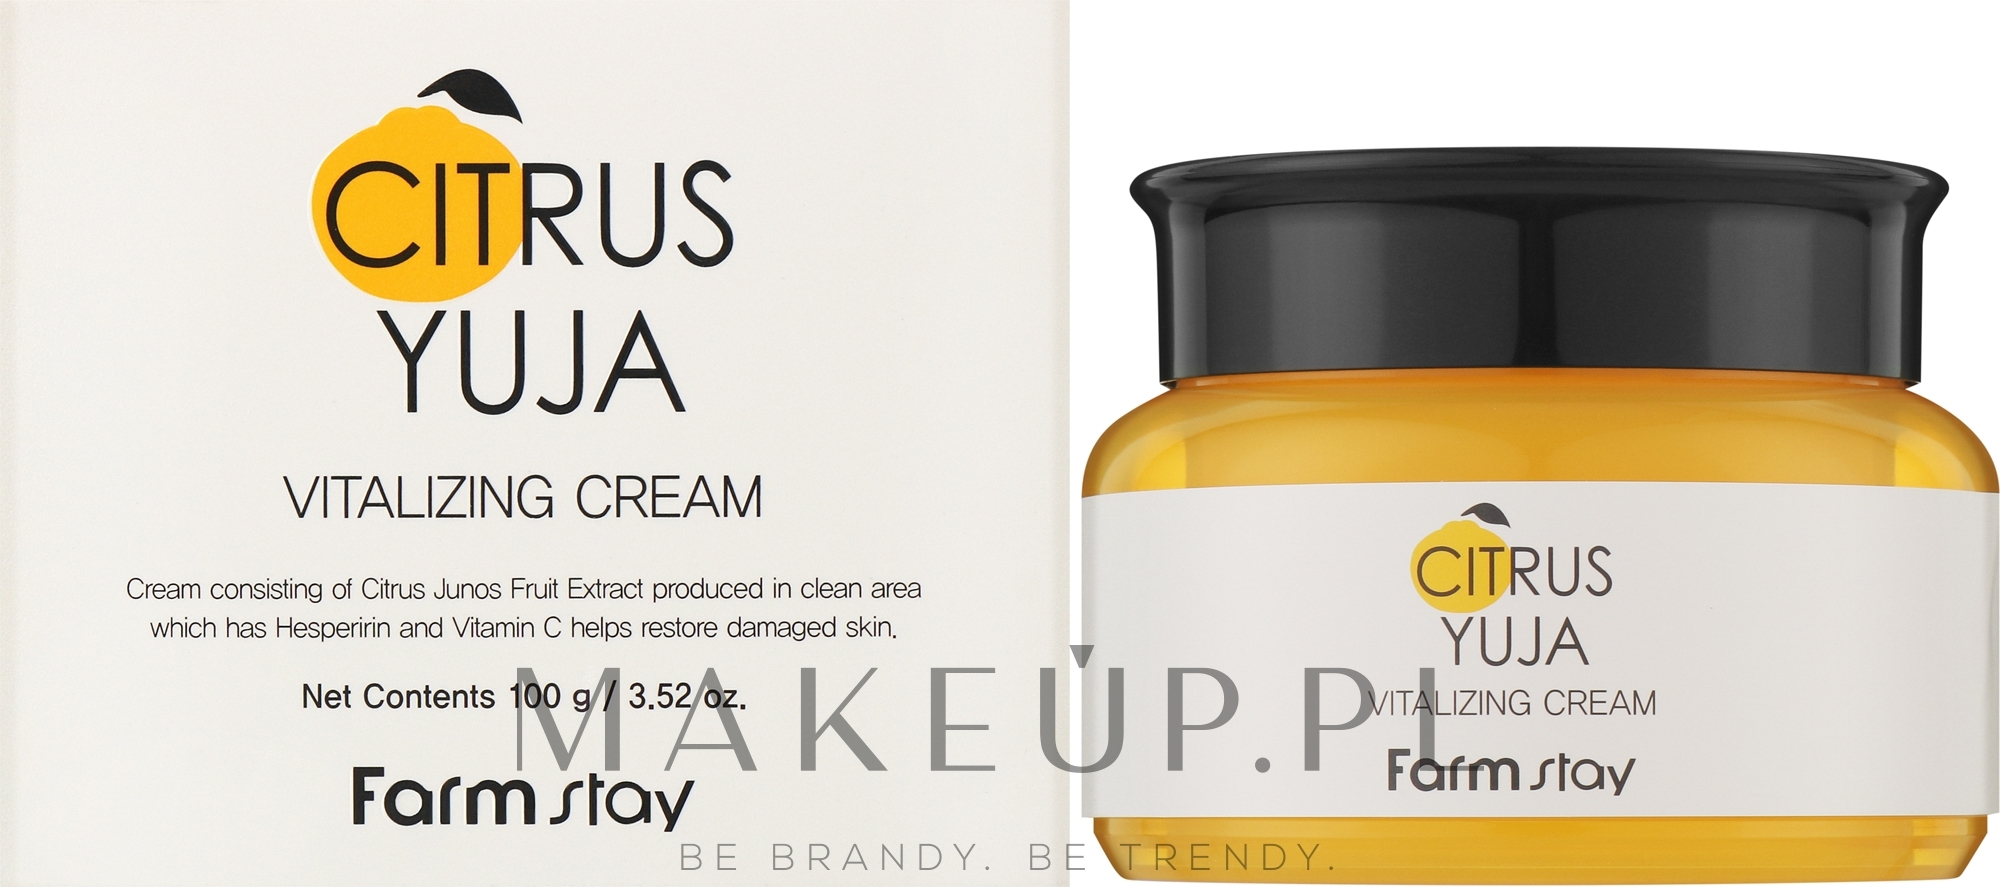 Odświeżający krem do twarzy, szyi i dekoltu - FarmStay Citrus Yuja Vitalizing Cream — Zdjęcie 100 g